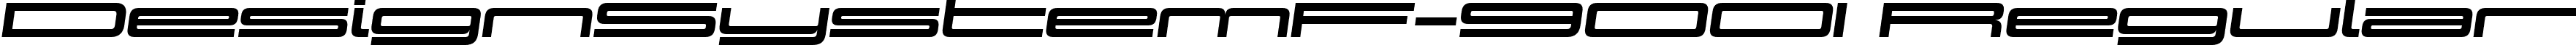 DesignSystemF-900I Regular font - Design System F 900 Italic.ttf